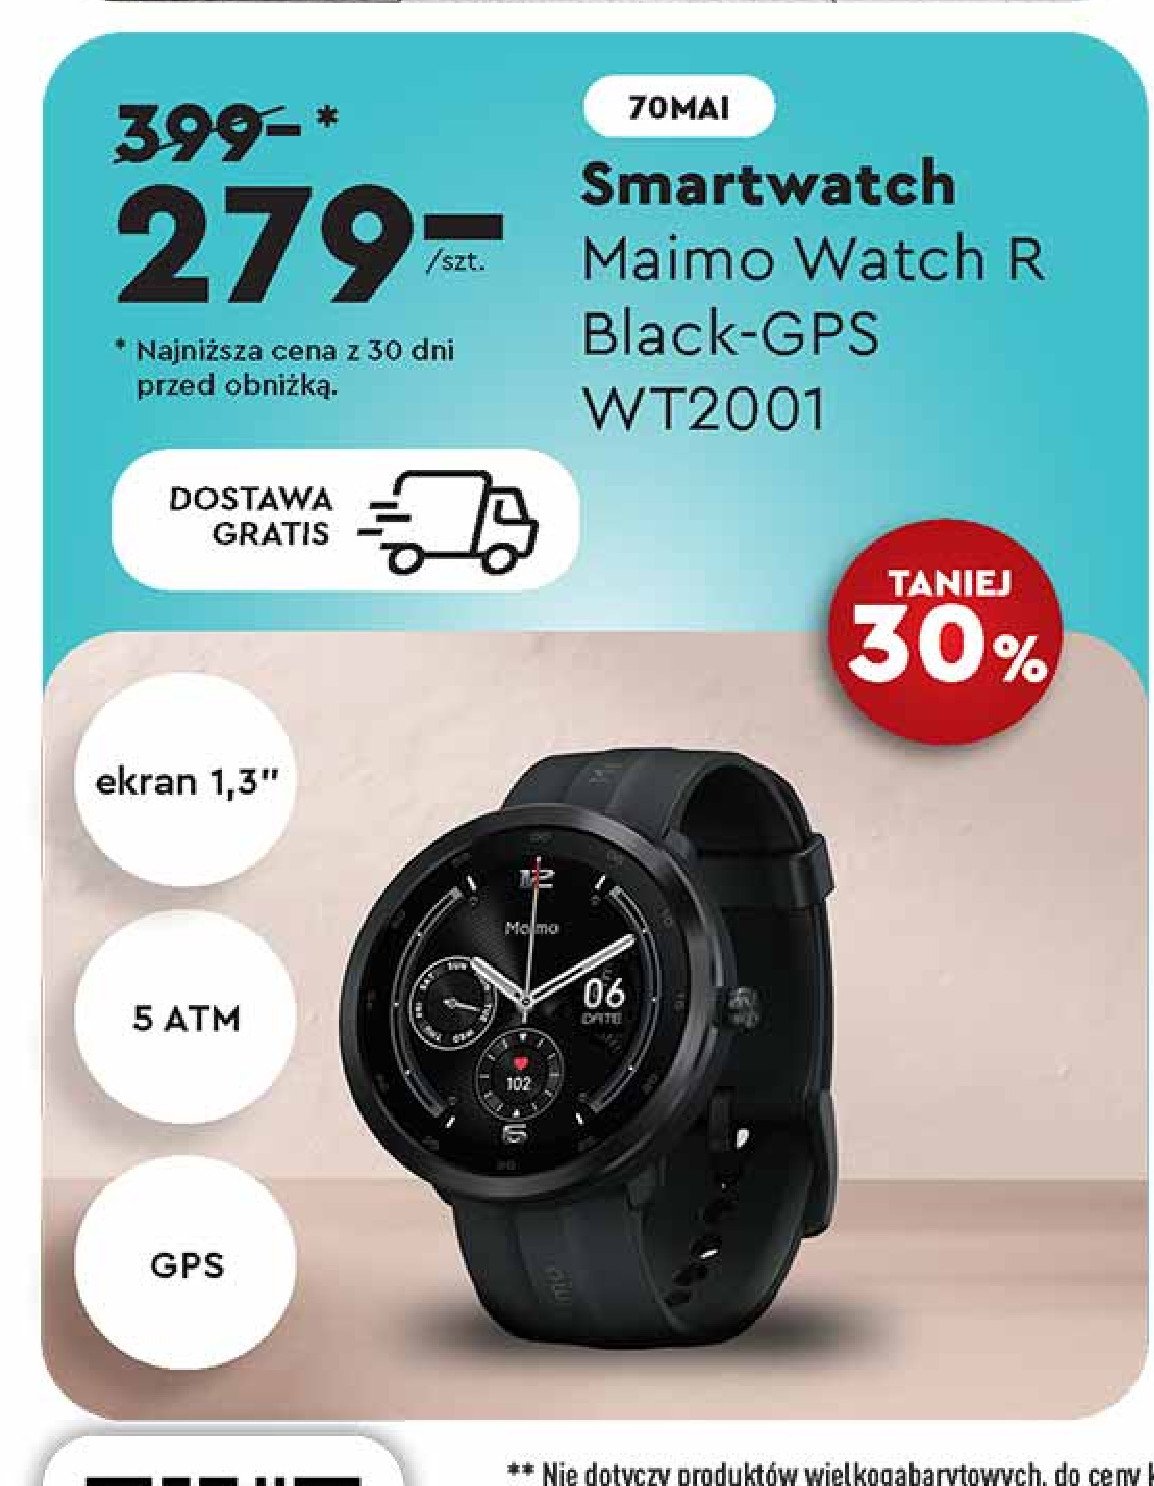 Smartwatch maimo wt2001 promocja